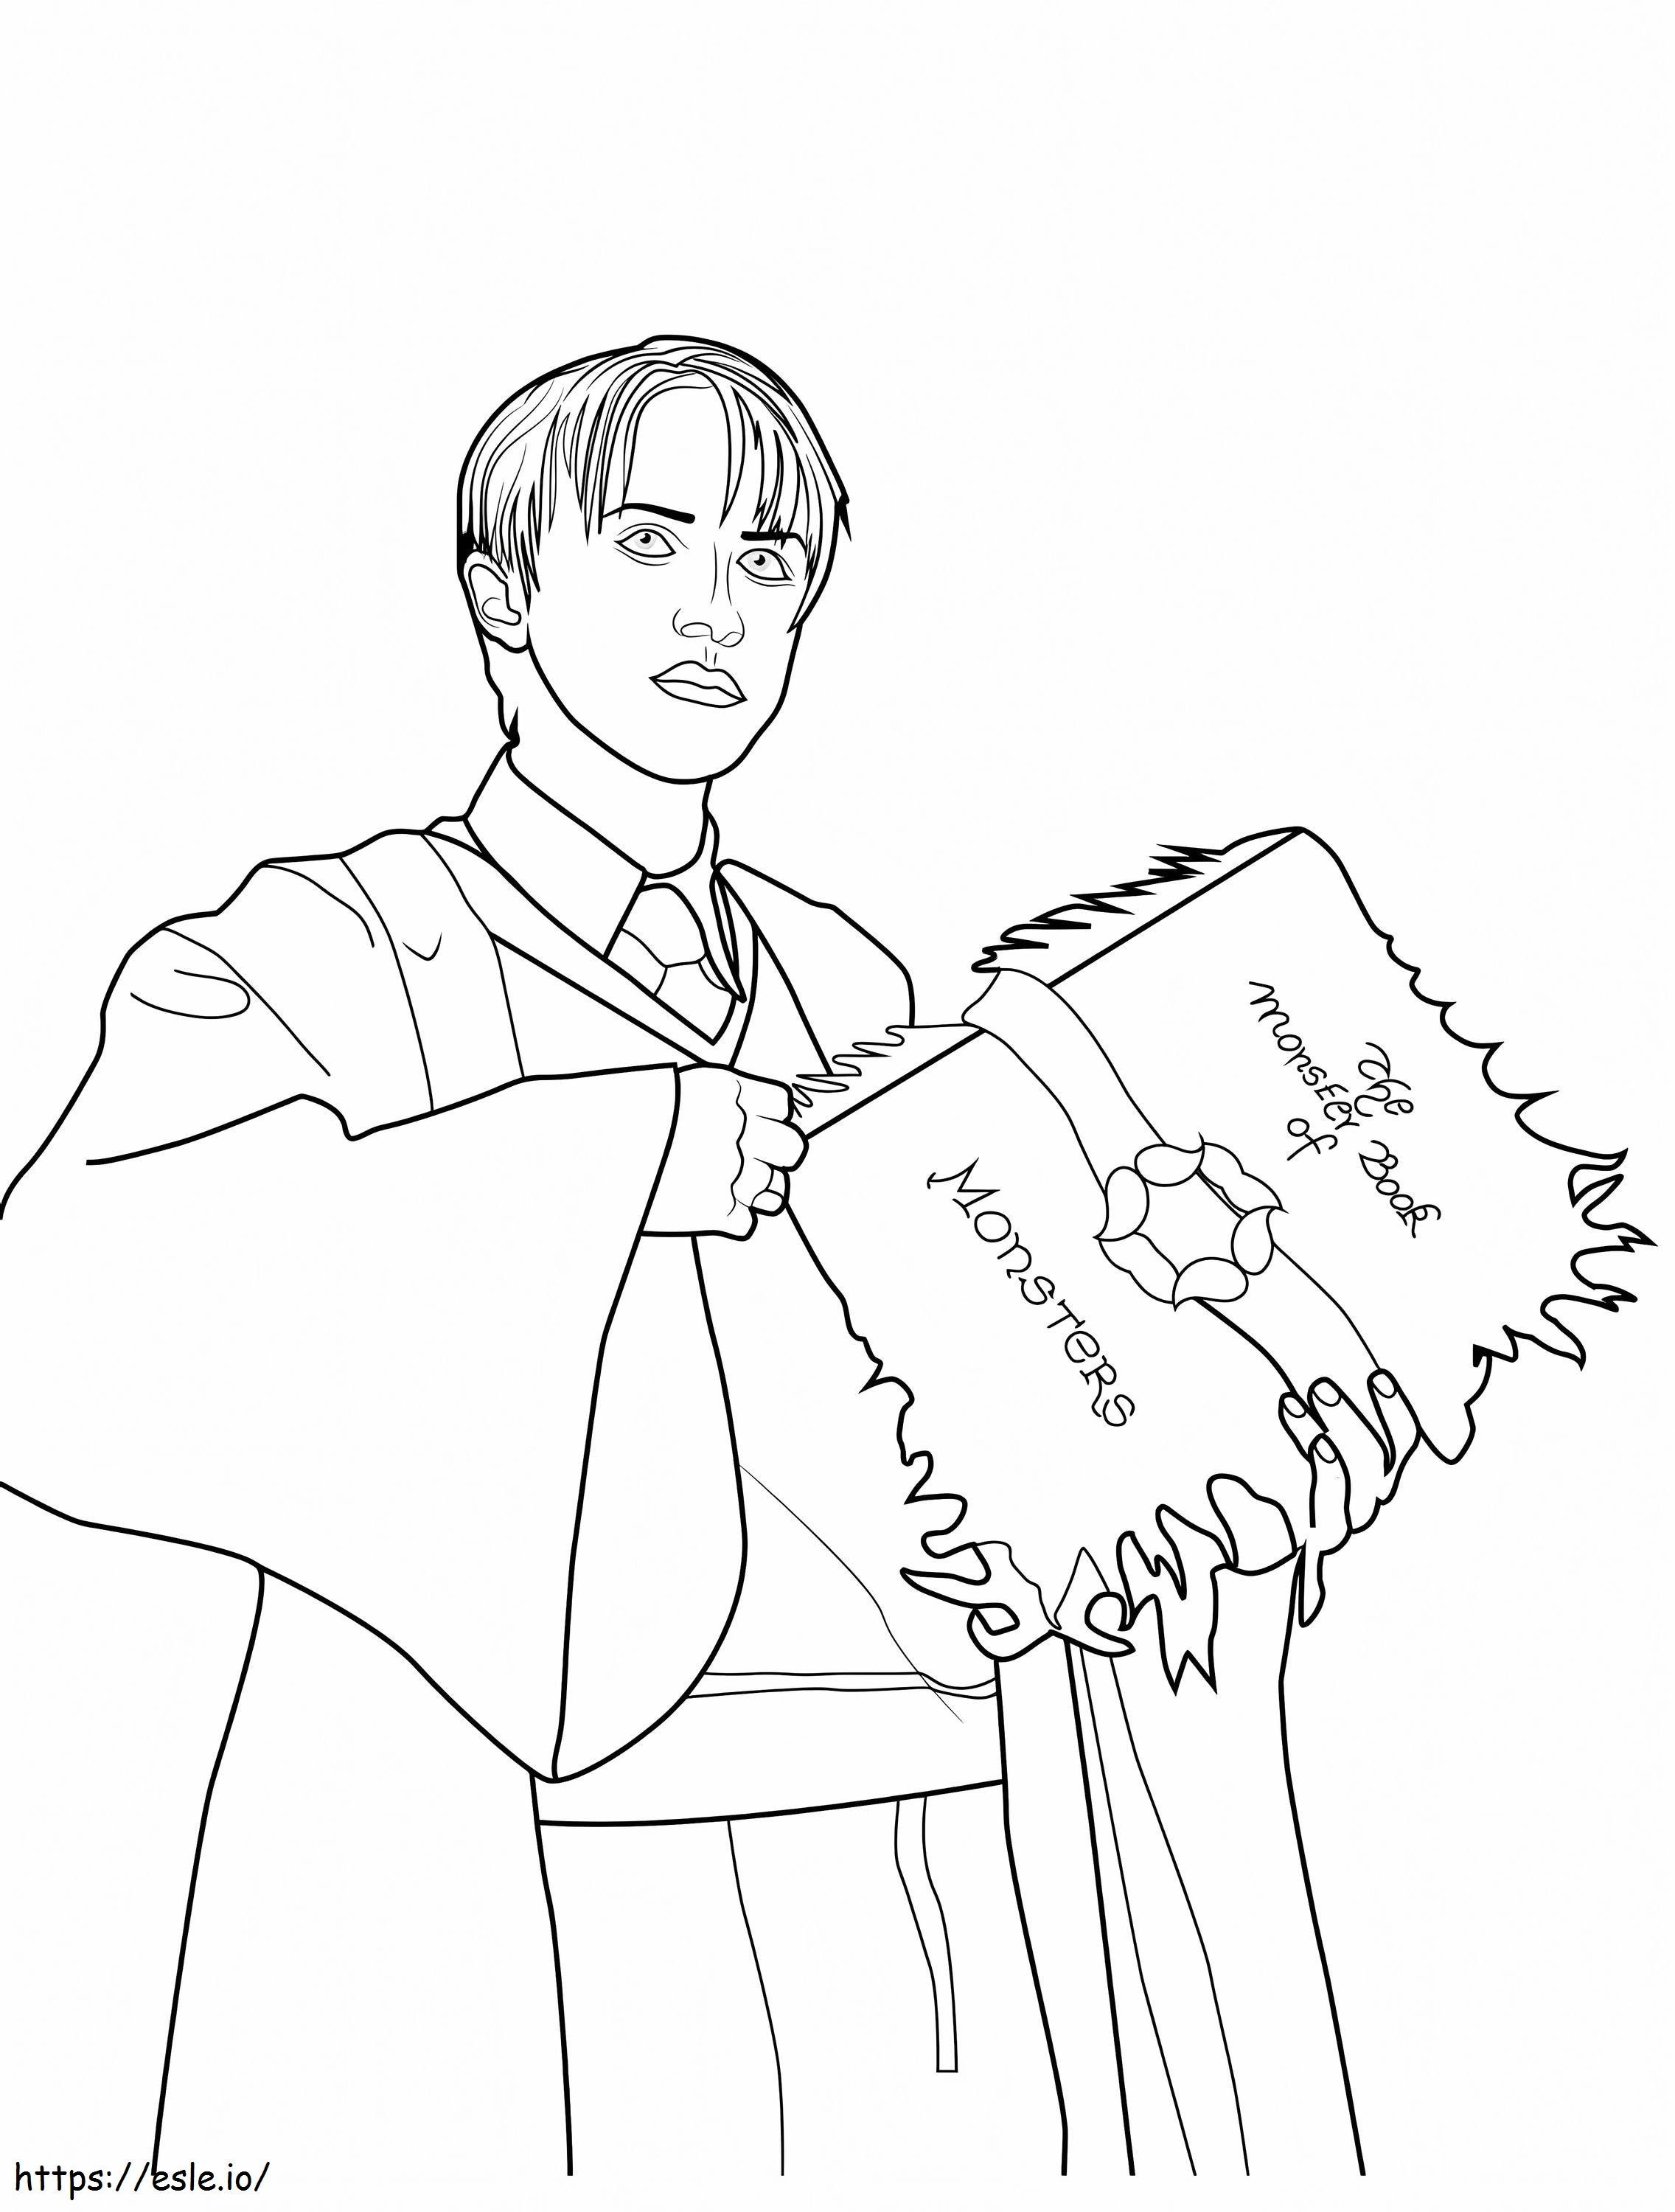 Draco Malfoy con in mano un libro da colorare